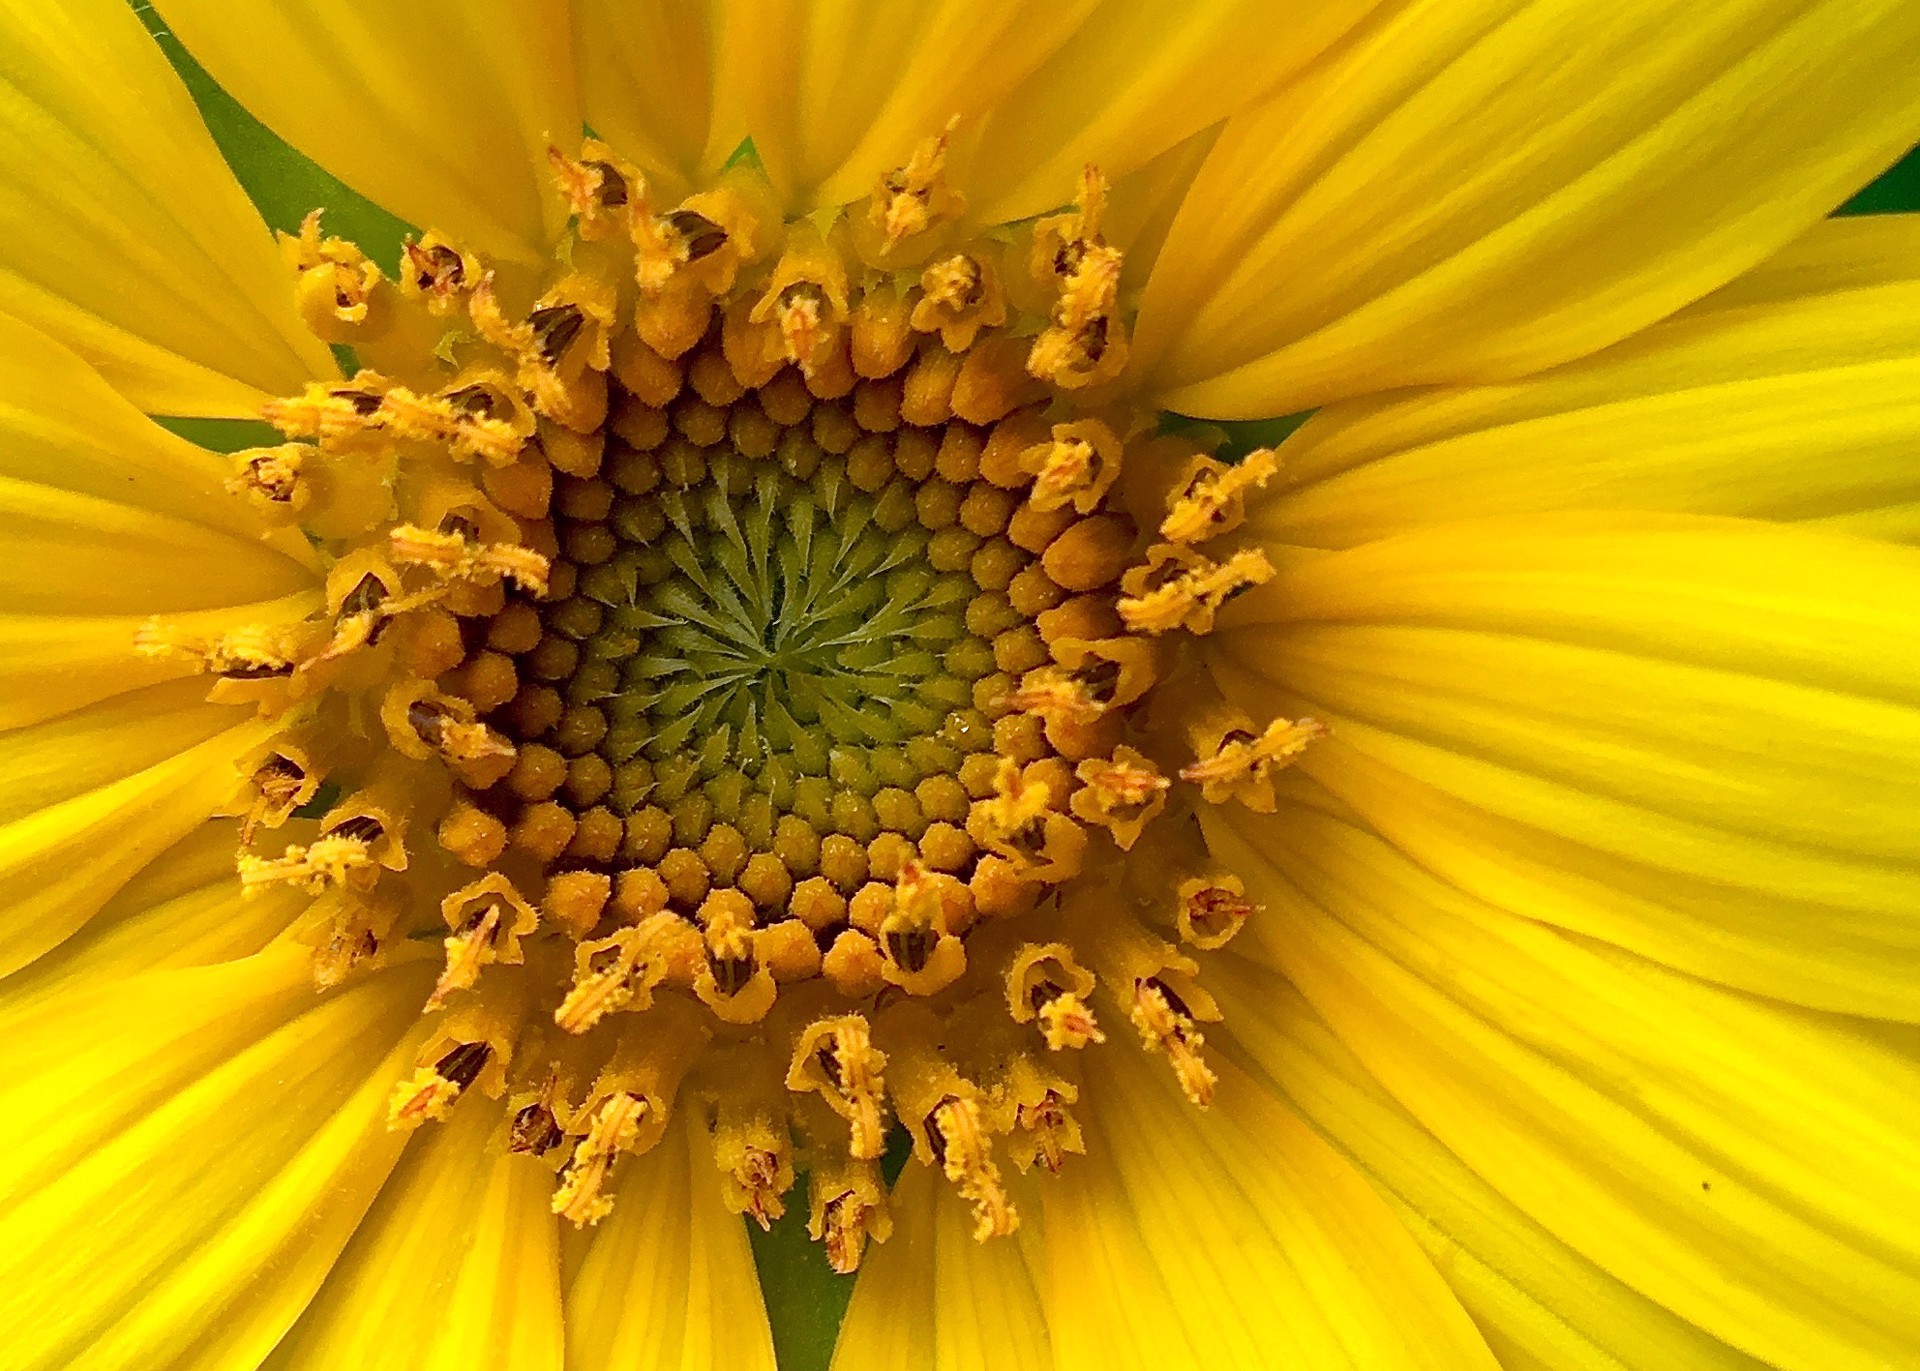 Sunflower by Amy Kaslow